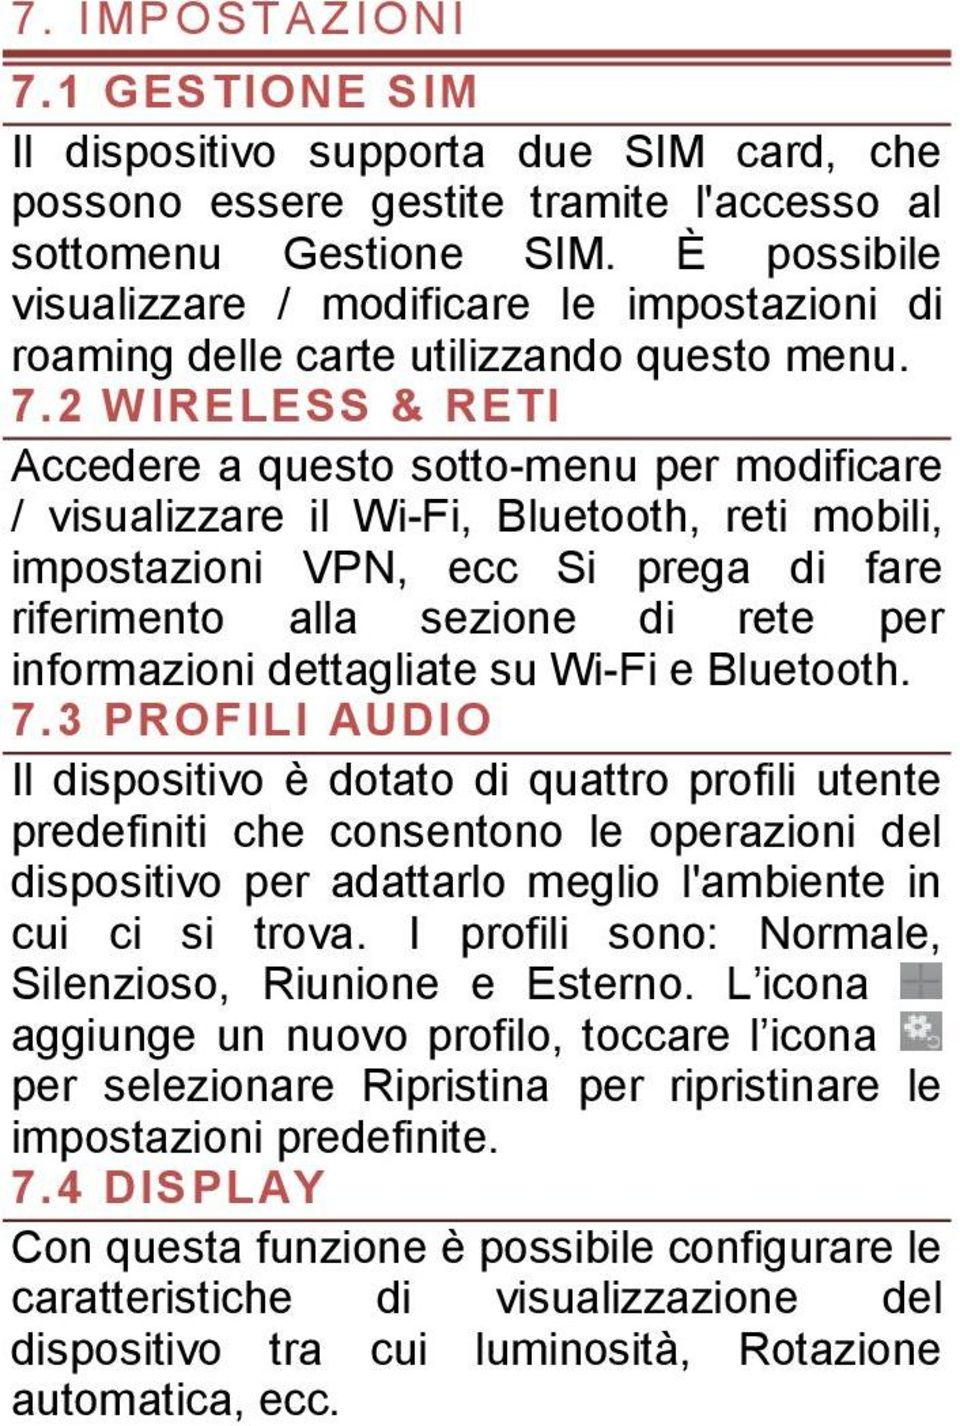 2 WIRELESS & RETI Accedere a questo sotto-menu per modificare / visualizzare il Wi-Fi, Bluetooth, reti mobili, impostazioni VPN, ecc Si prega di fare riferimento alla sezione di rete per informazioni